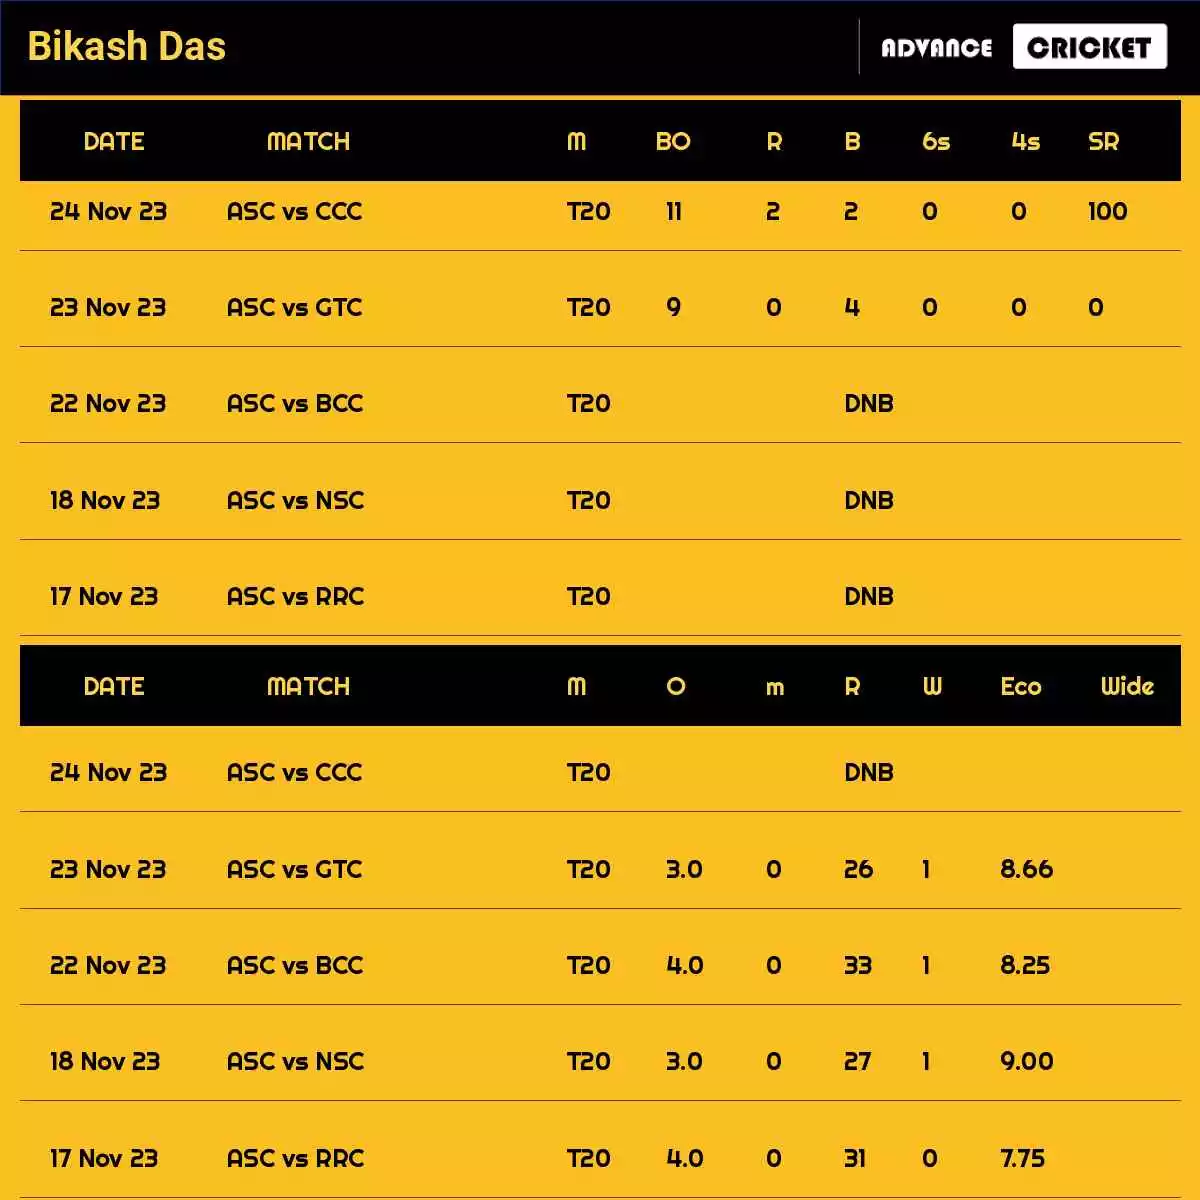 Bikash Das Recent Matches Details Date Wise